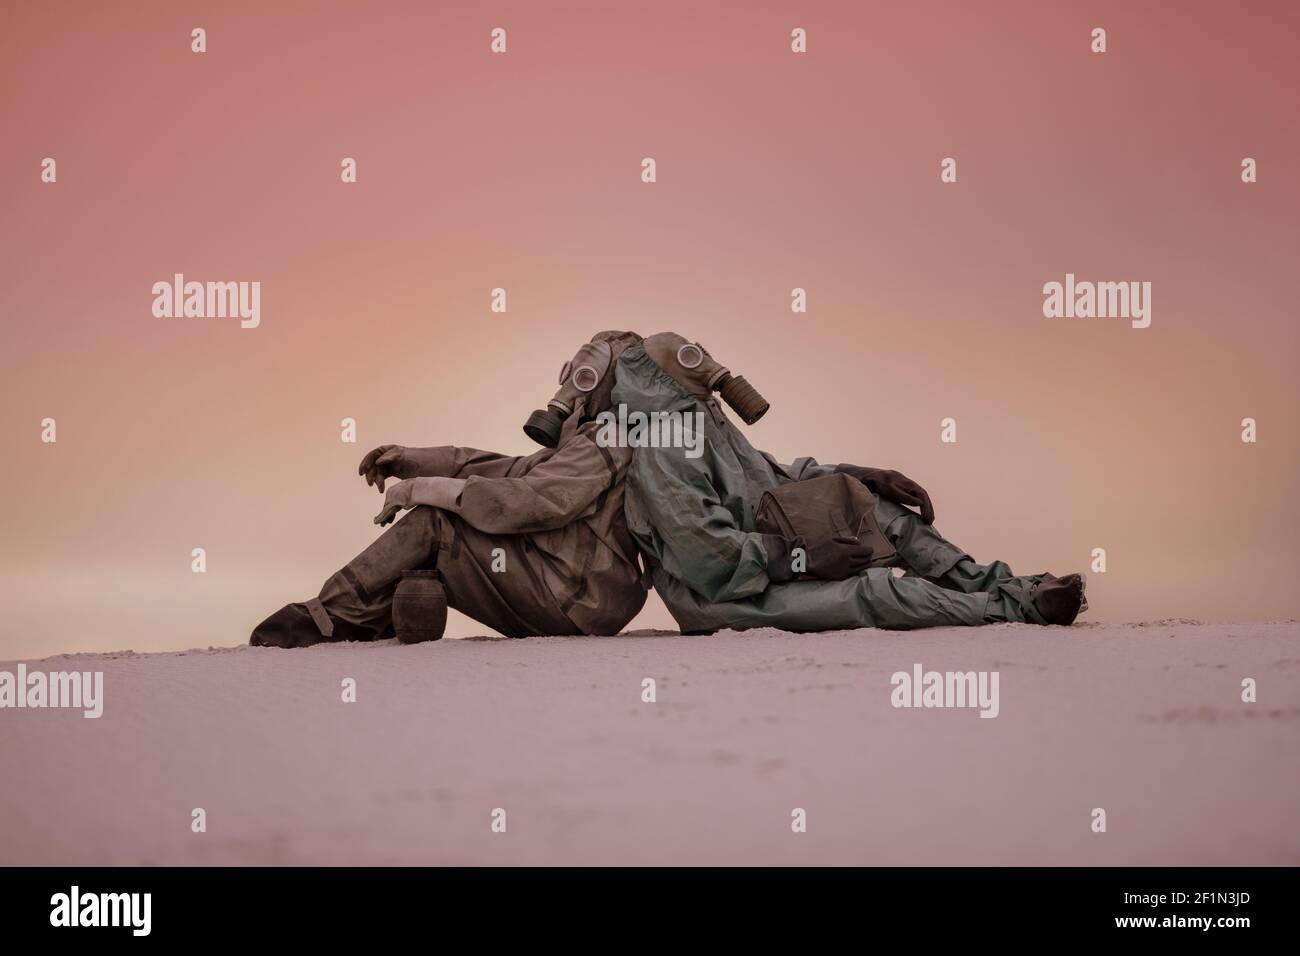 mondo post-apocalittico dopo una guerra nucleare. Due uomini in maschere a gas e tute protettive si siedono sulla sabbia con le spalle l'una all'altra. Foto Stock